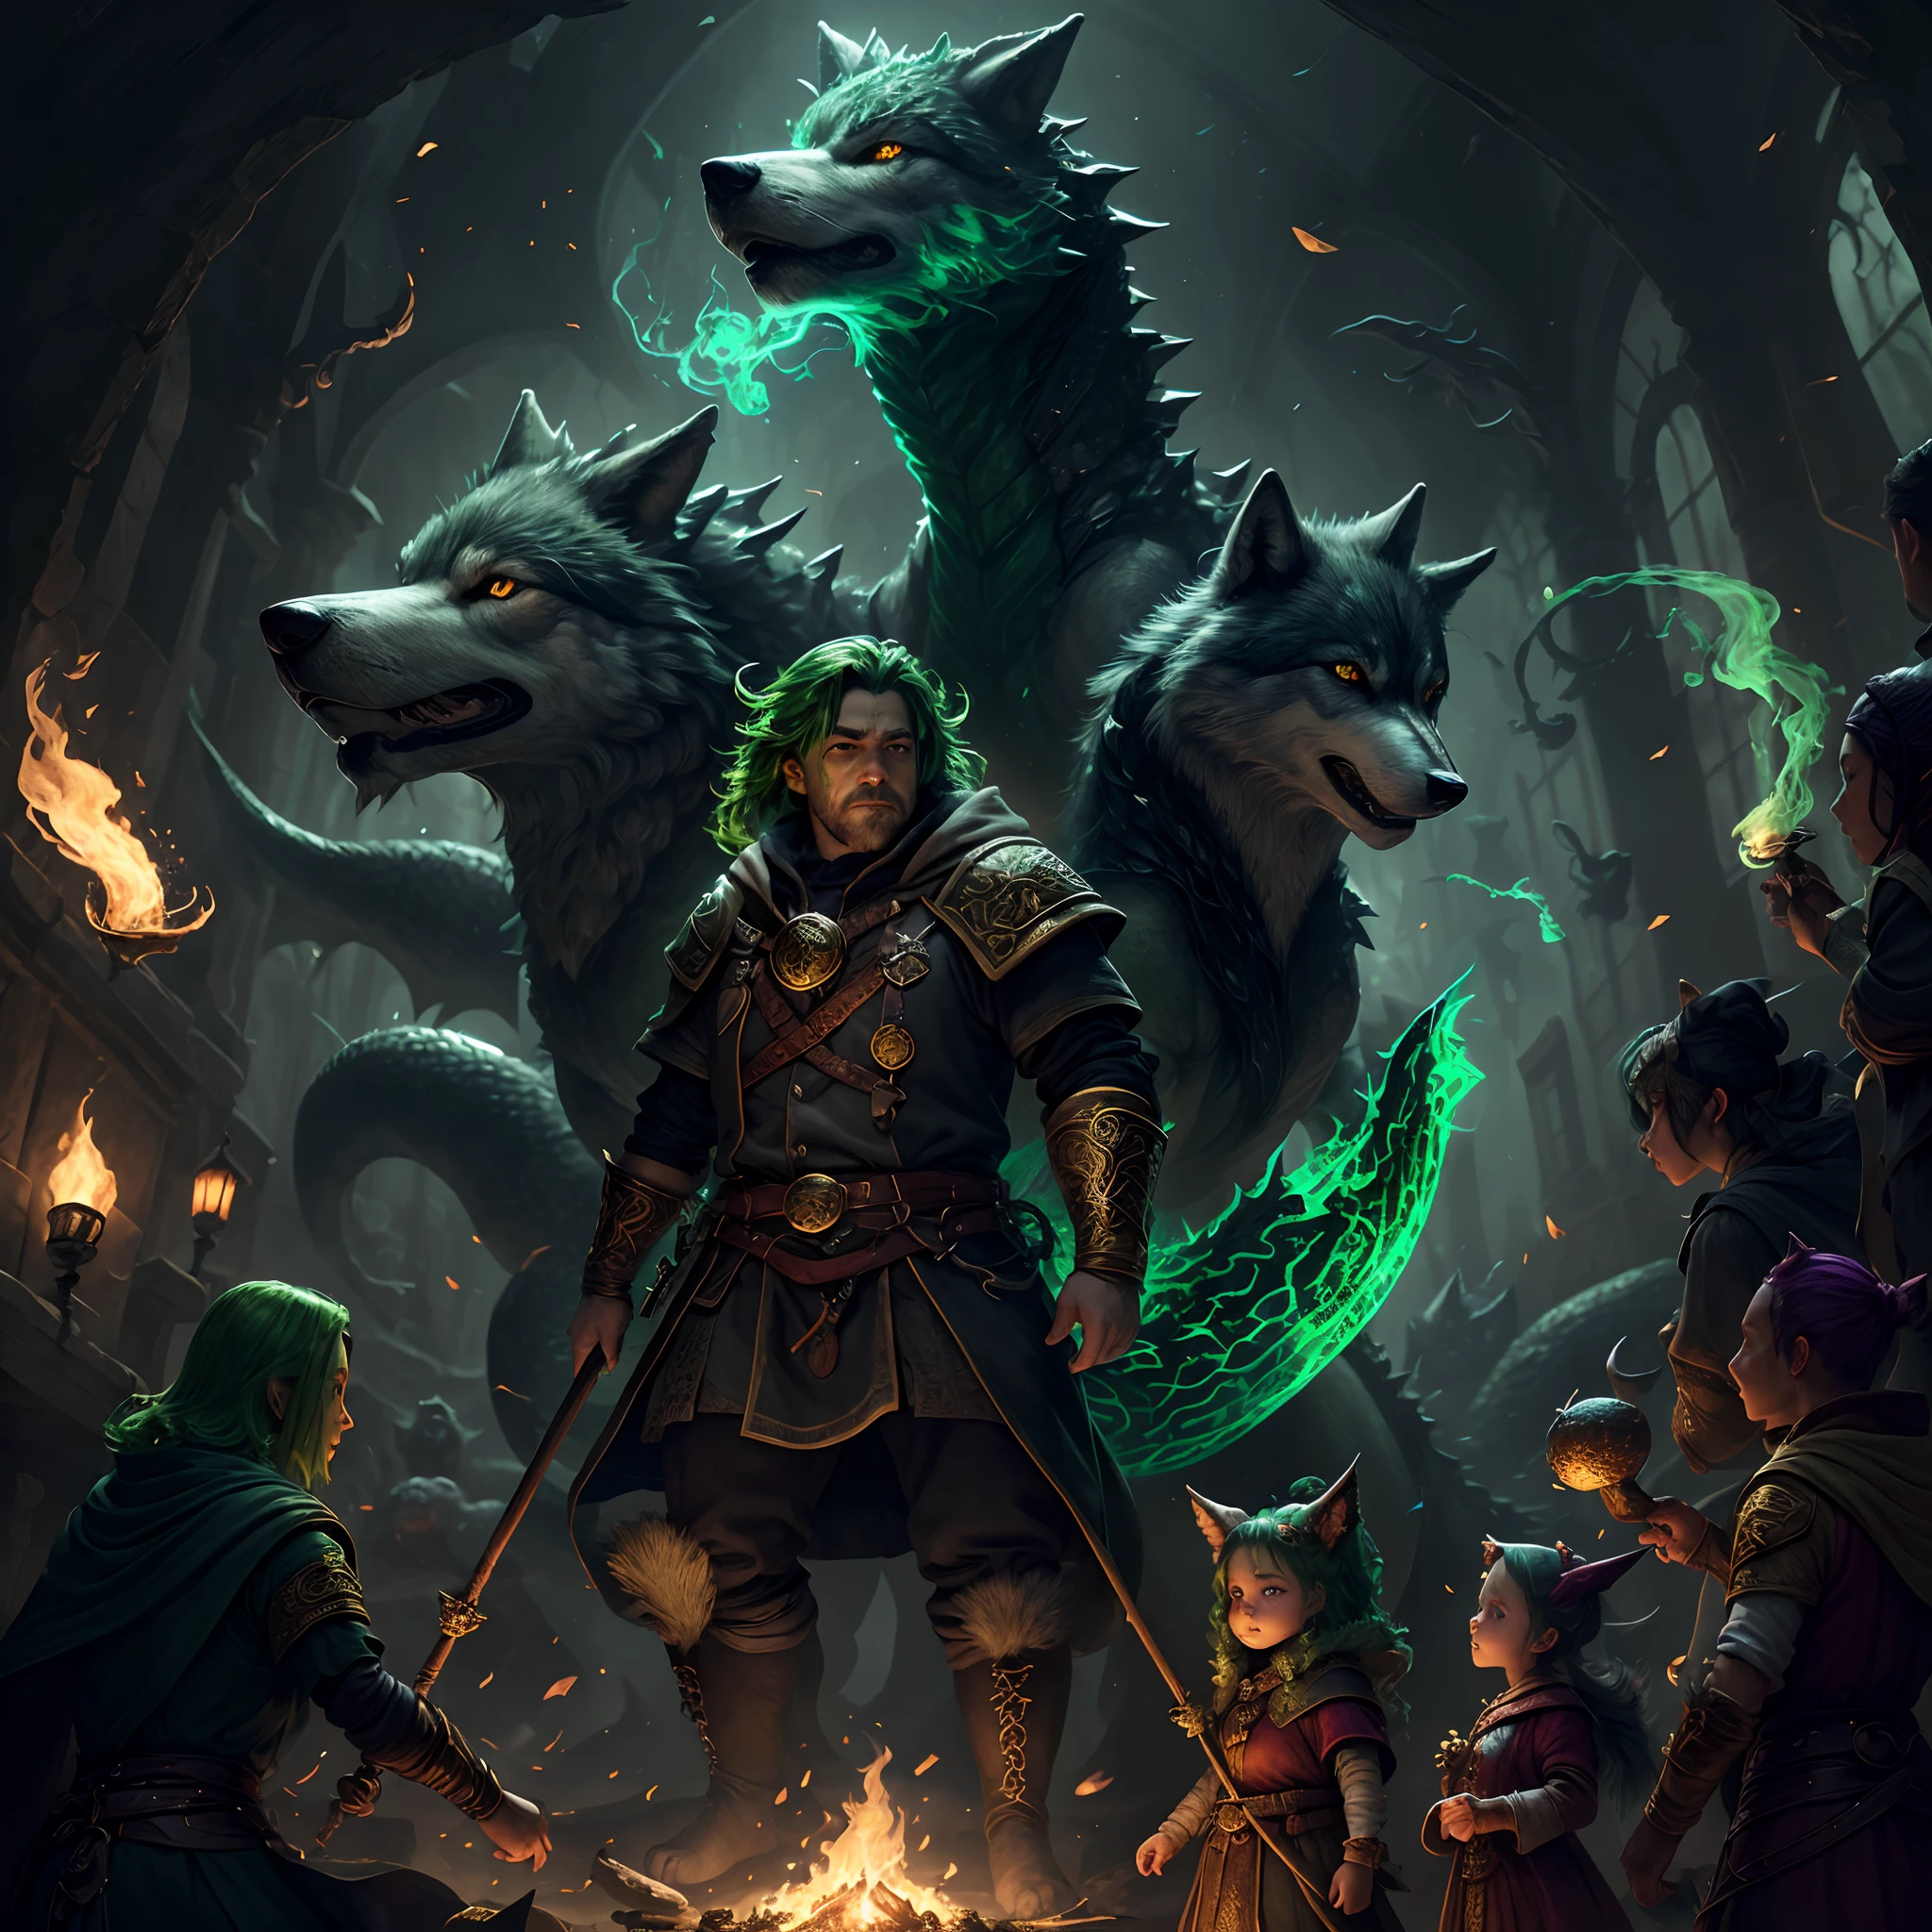 Um Invocador anão de cabelos verdes, roupas pretas com runas douradas, controlando criaturas, um lobo e um dragão, mascotes controlados por magia com uma aura mágica verde